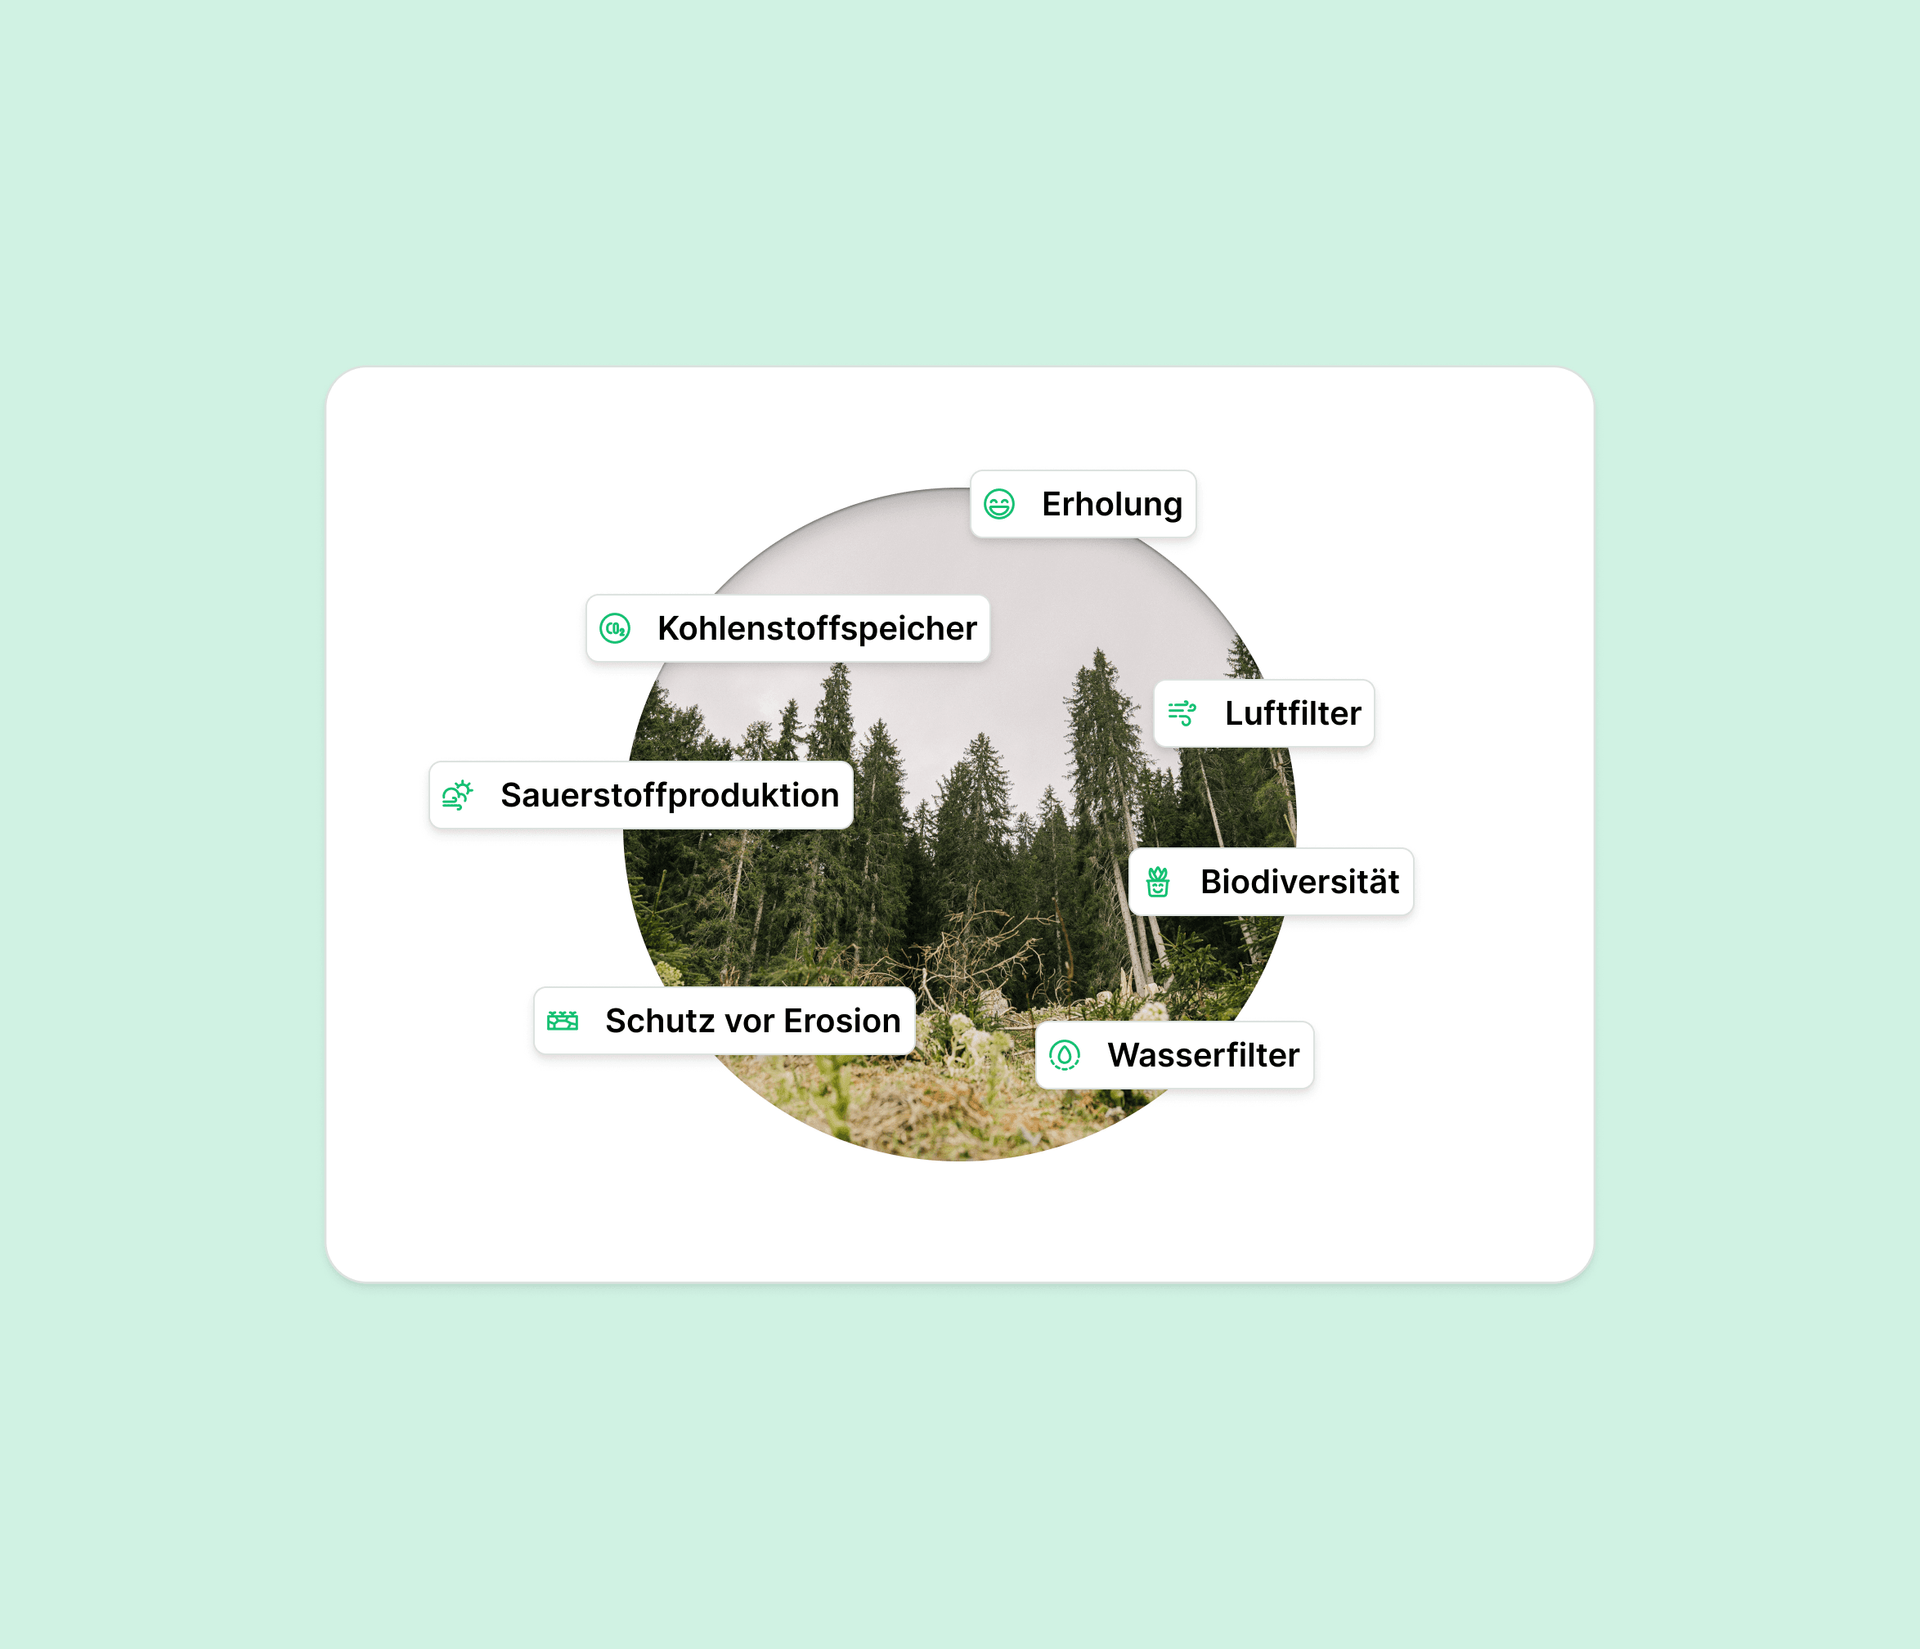 Bild mit verschiedenen beispielen für die Ökosystemleistungen des Waldes